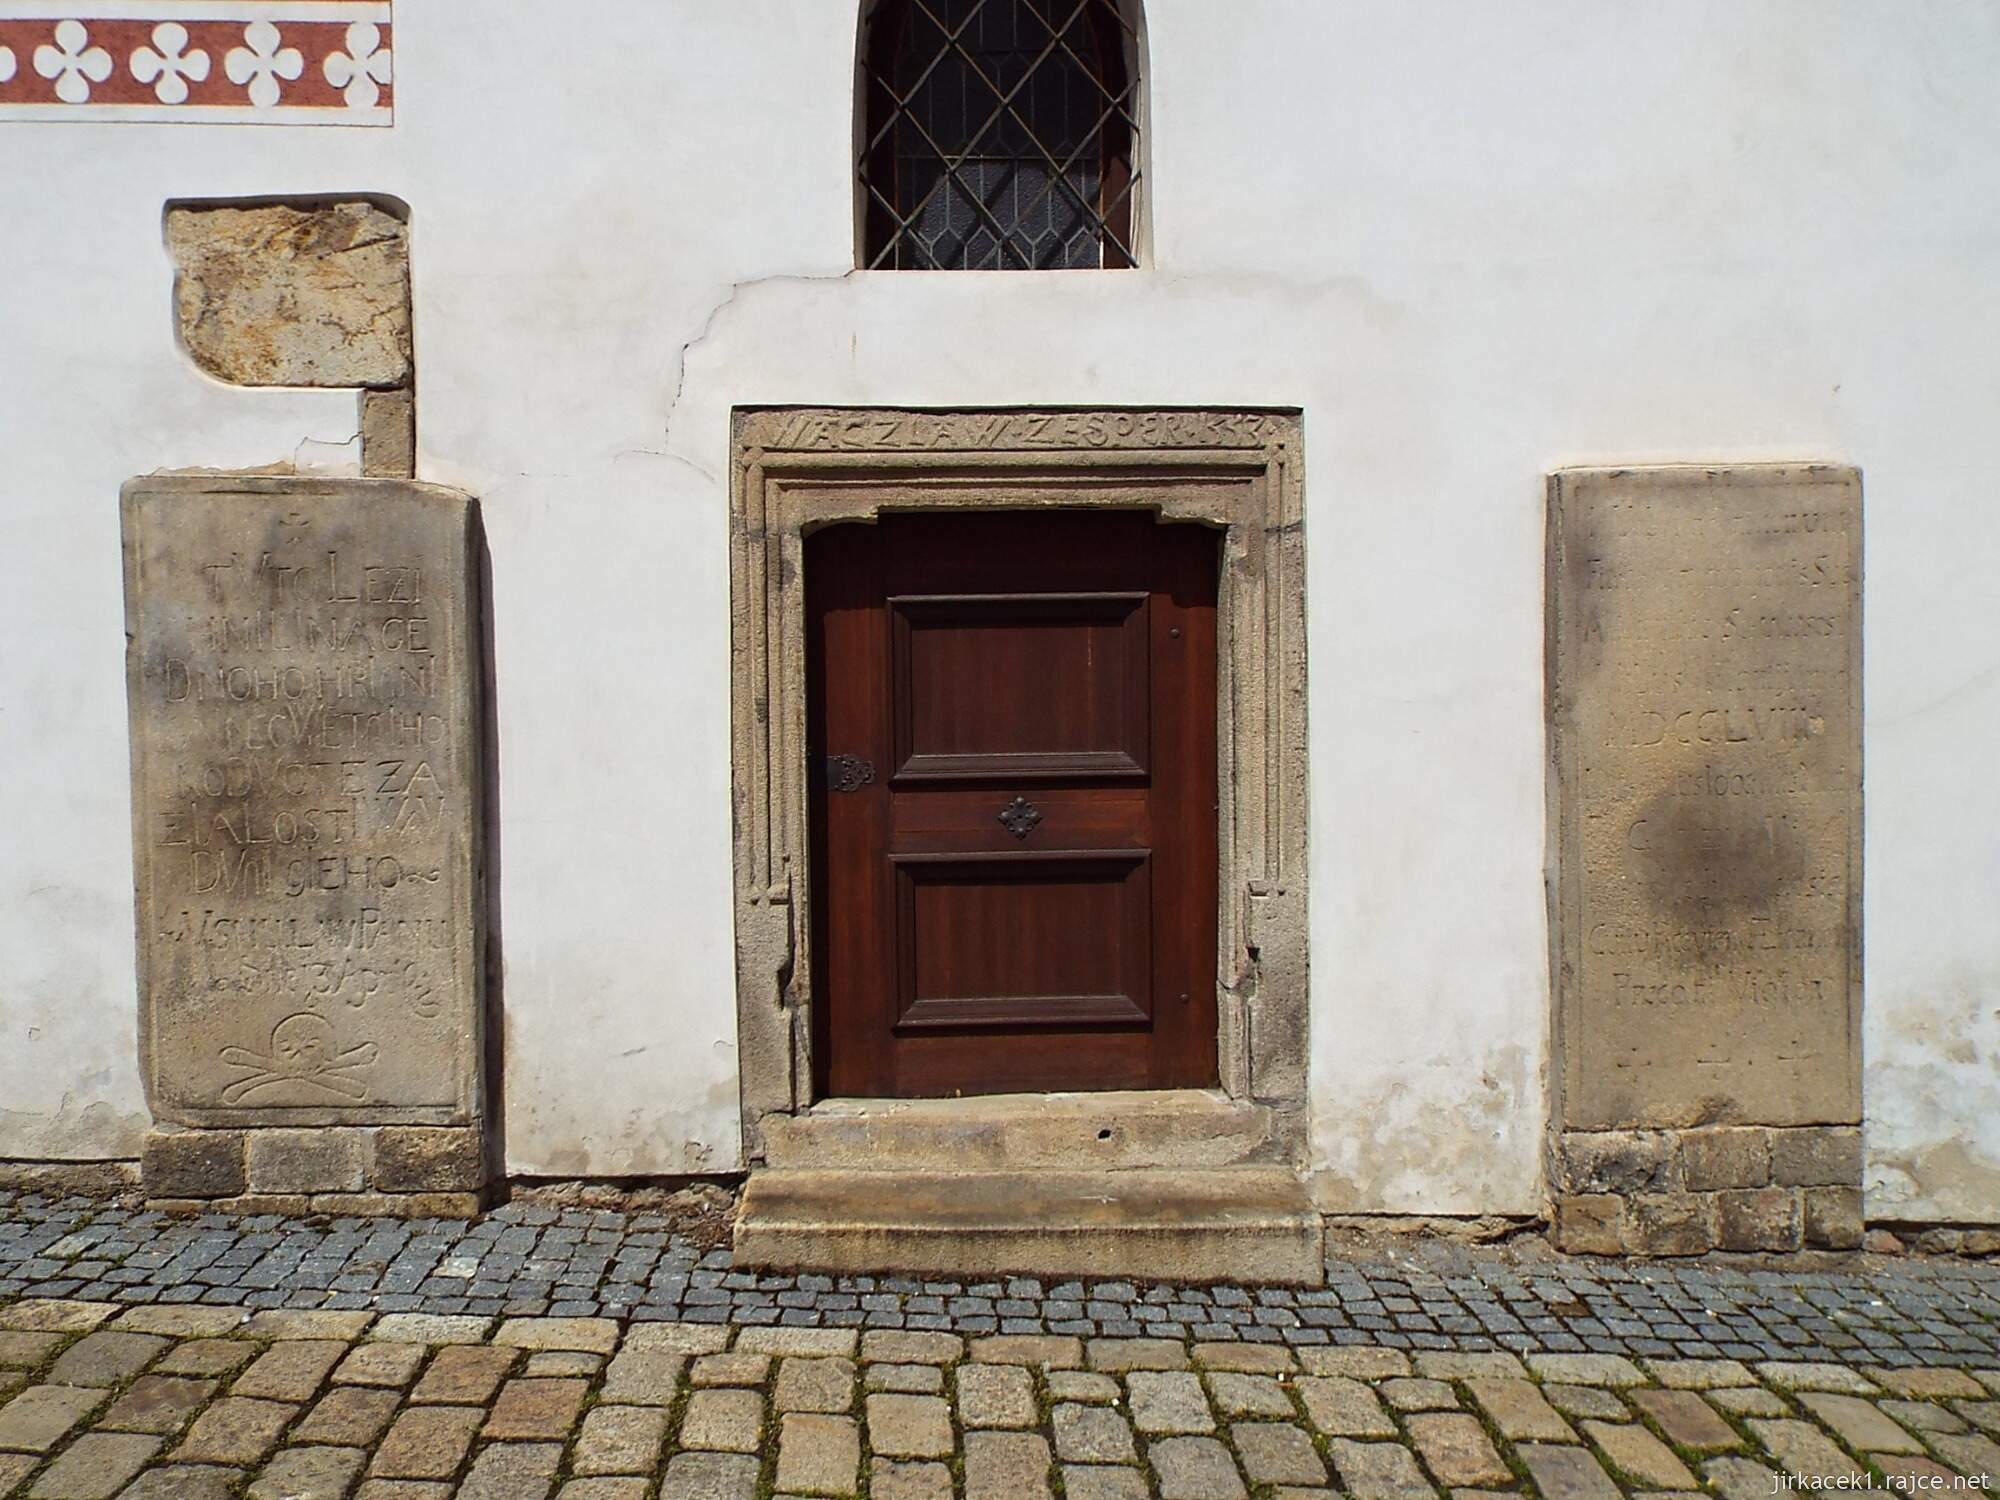 H - Pelhřimov - Kostel sv. Bartoloměje 04 - boční vchod a náhrobní desky ve zdi - nad vchodem jméno primátora ze Sper 1533